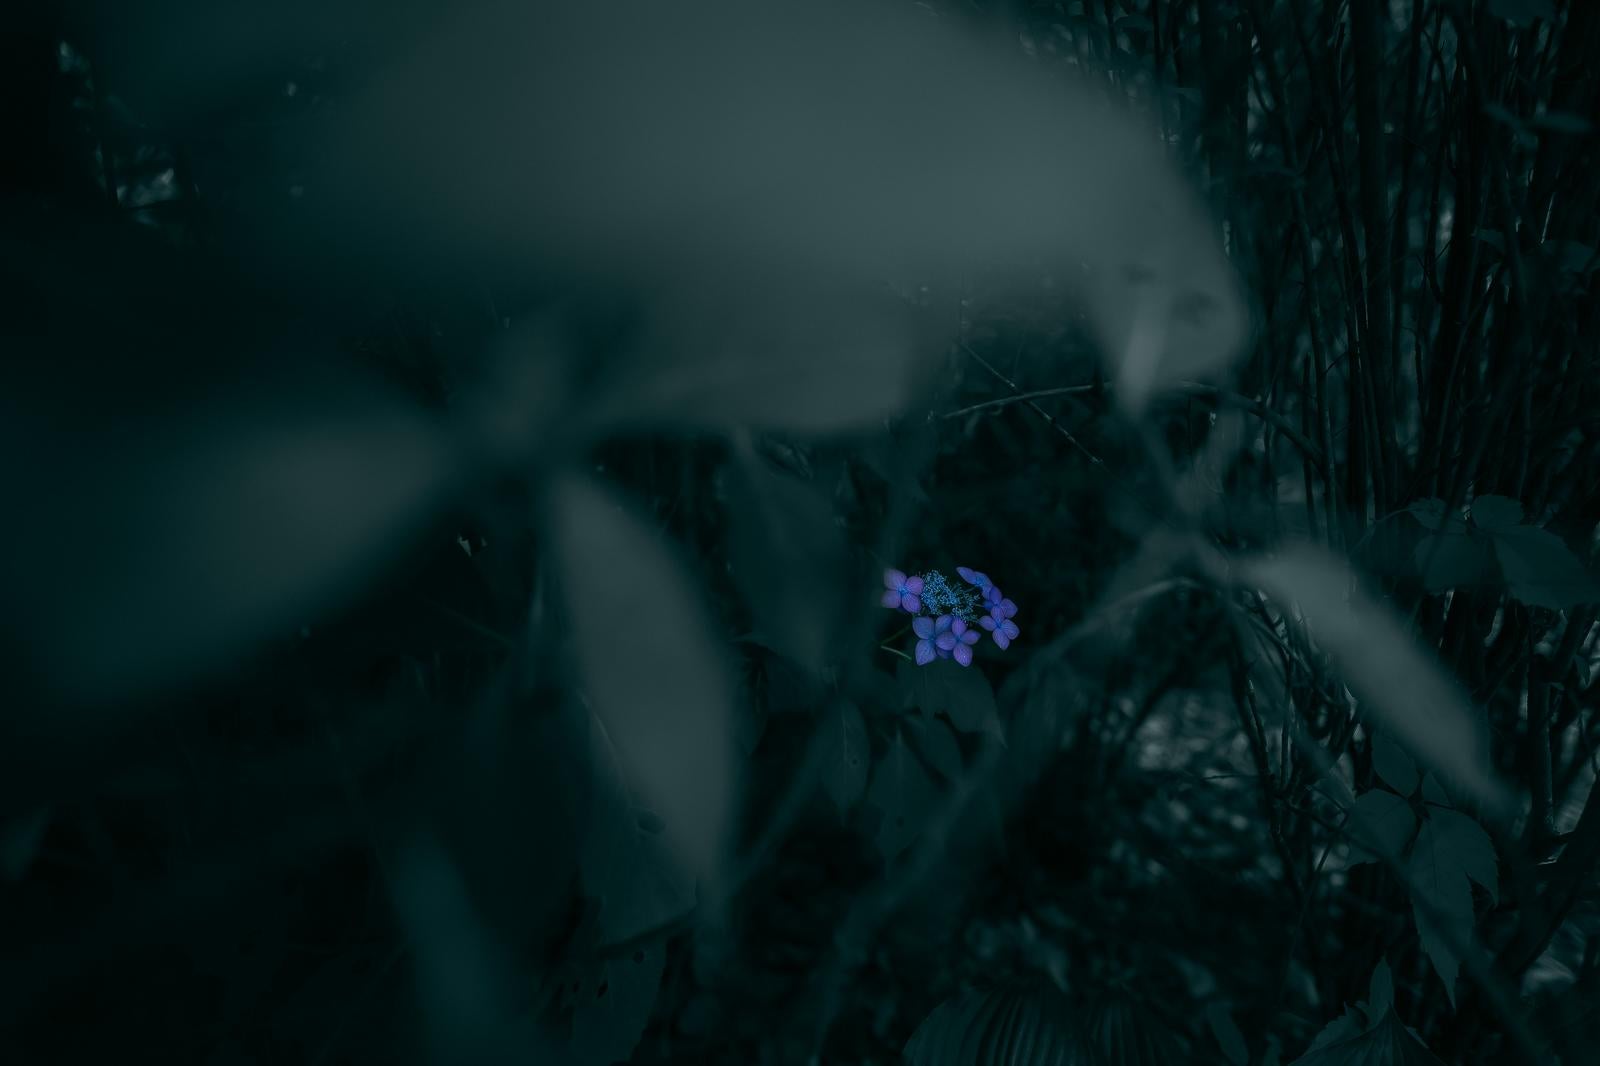 「草陰にひっそりと咲く青い紫陽花」の写真